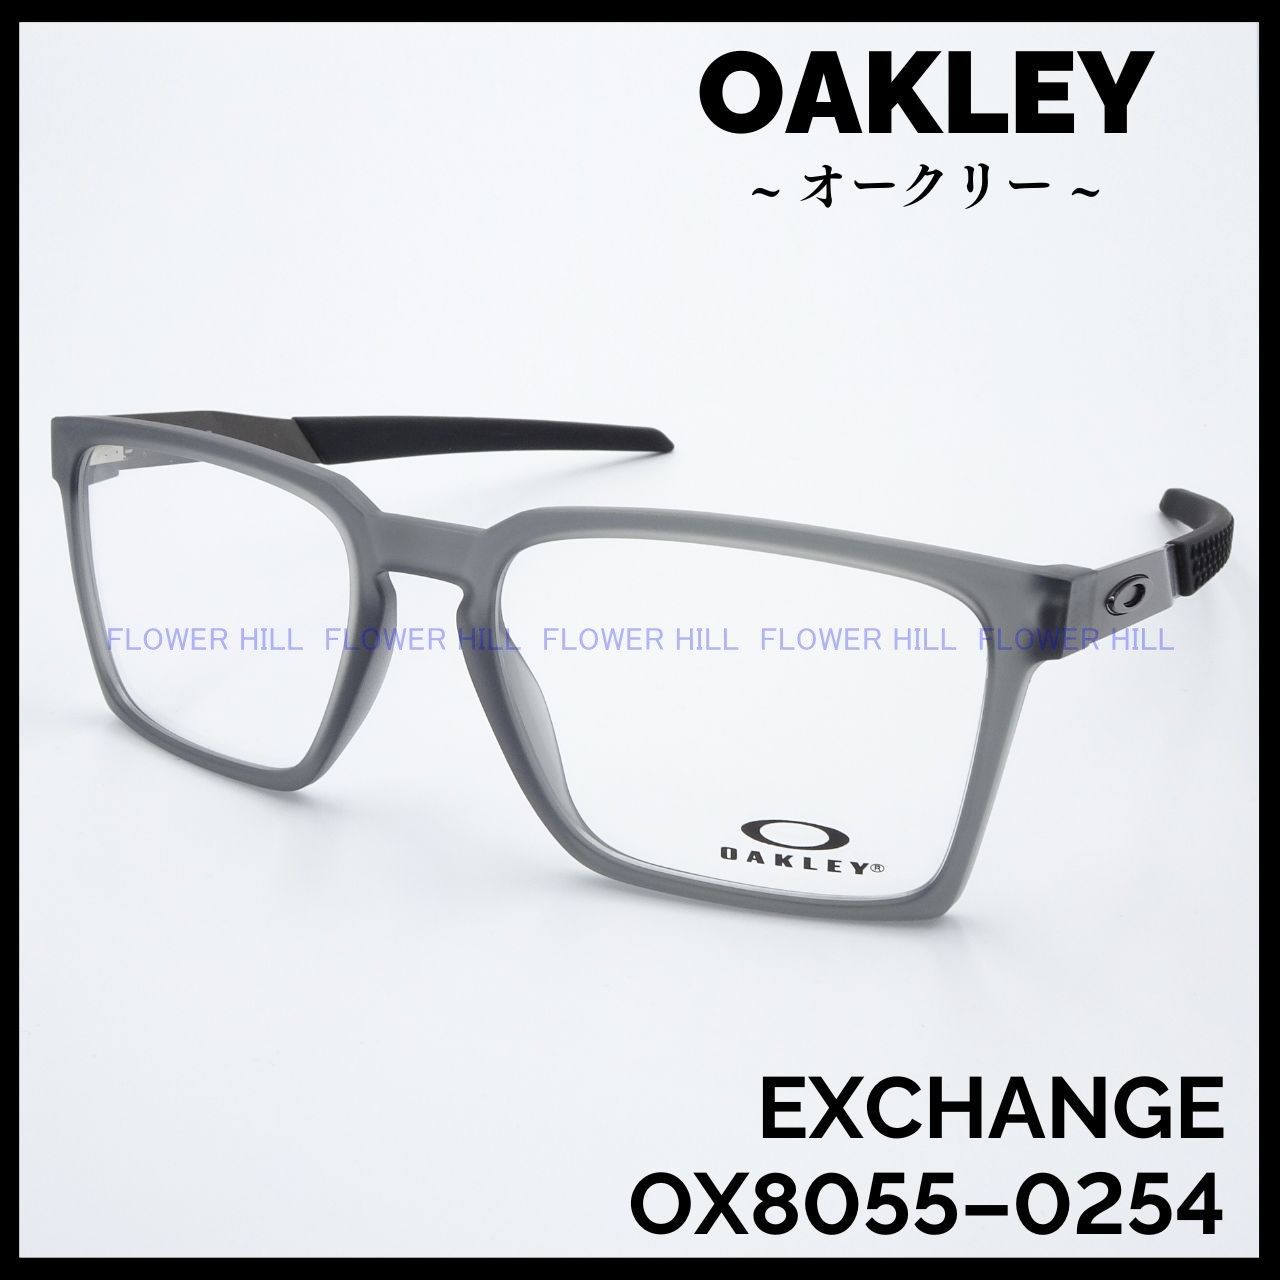 7,476円Oakley 正規品 Exchange OX8055 クリア 眼鏡 オークリー